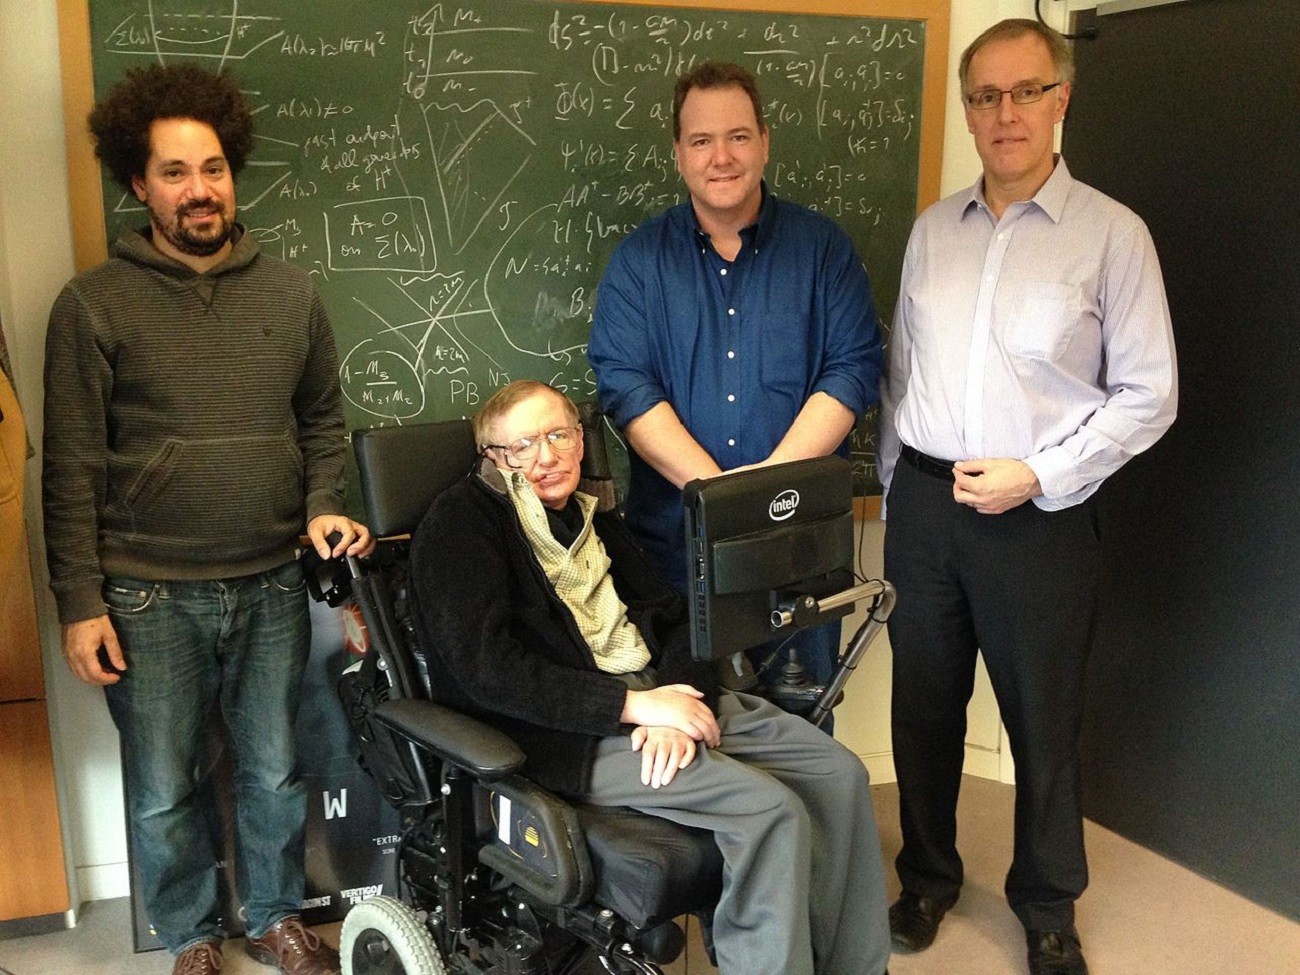 Stephen Hawking pozostawił po sobie tablicę z zapiskami. Po ponad 40 latach pokazano ją publicznie